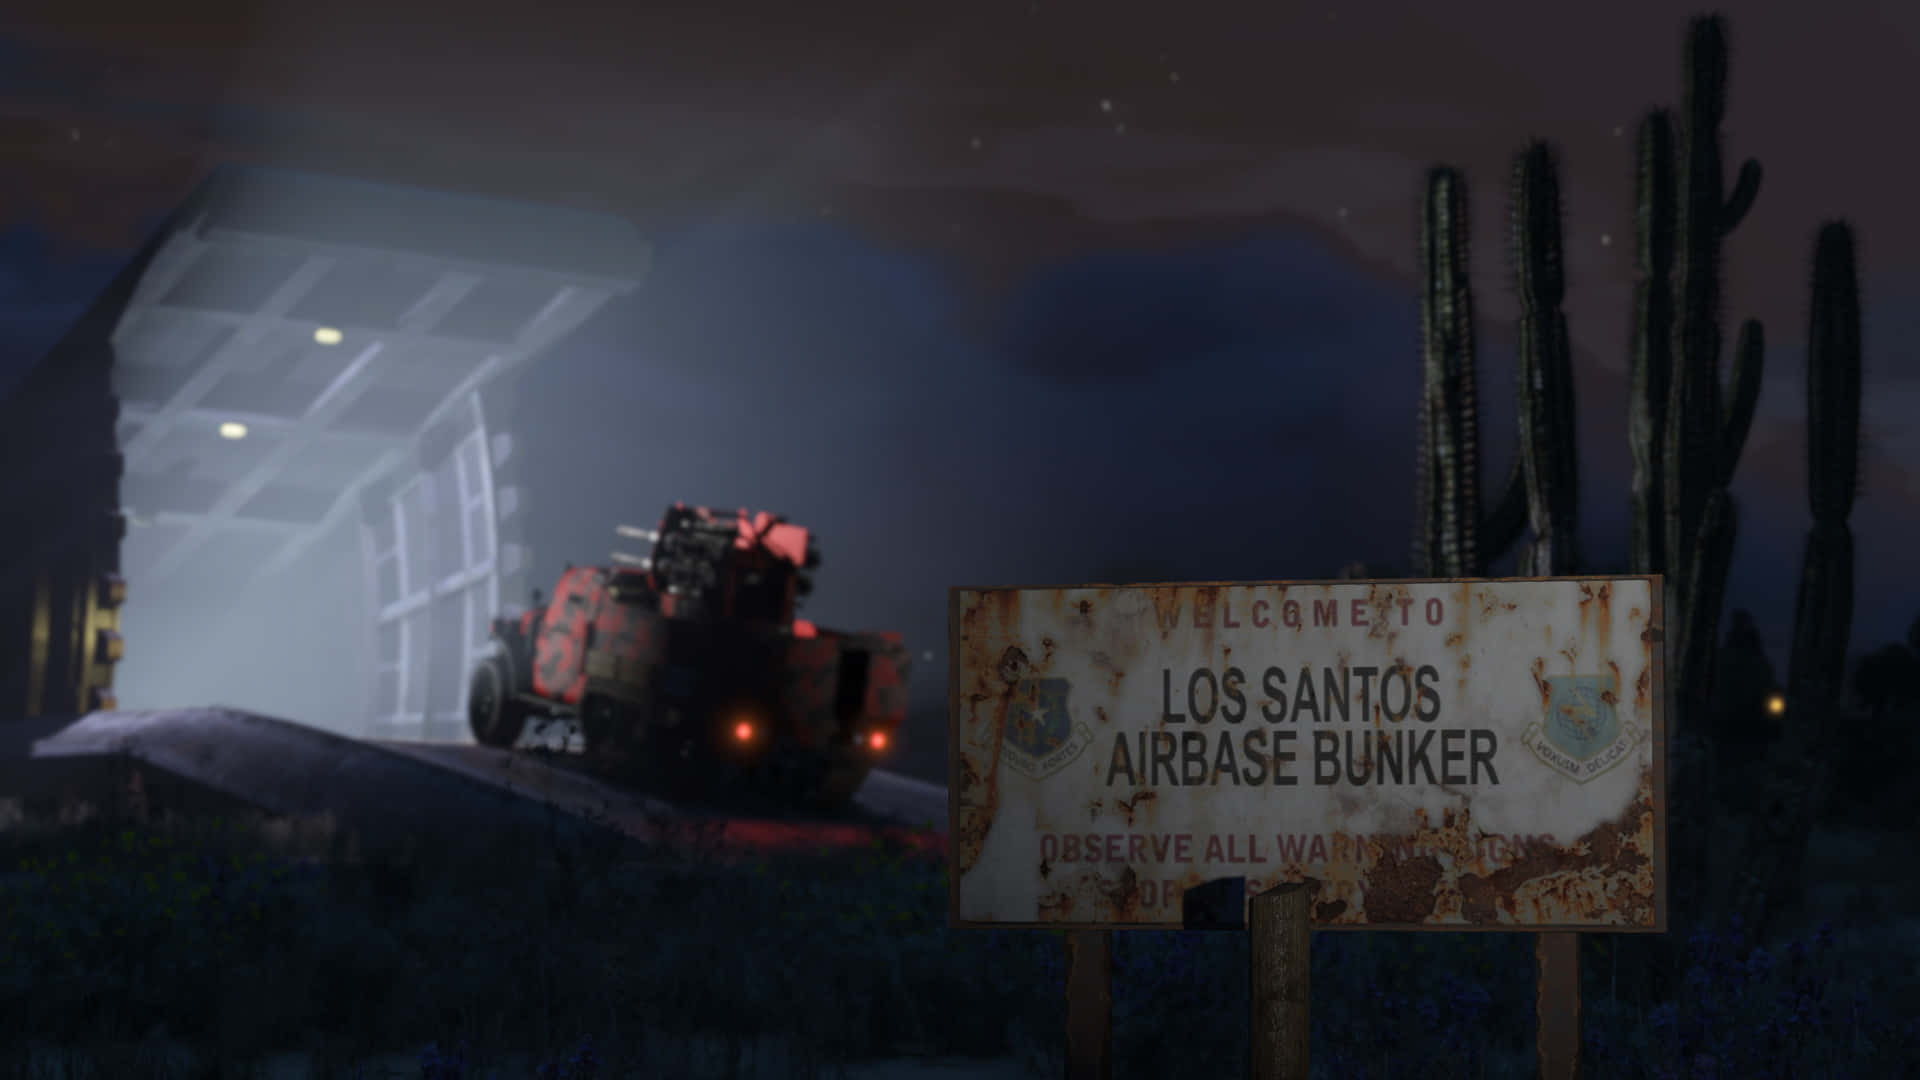 Explore Los Santos in Grand Theft Auto 5 Wallpaper